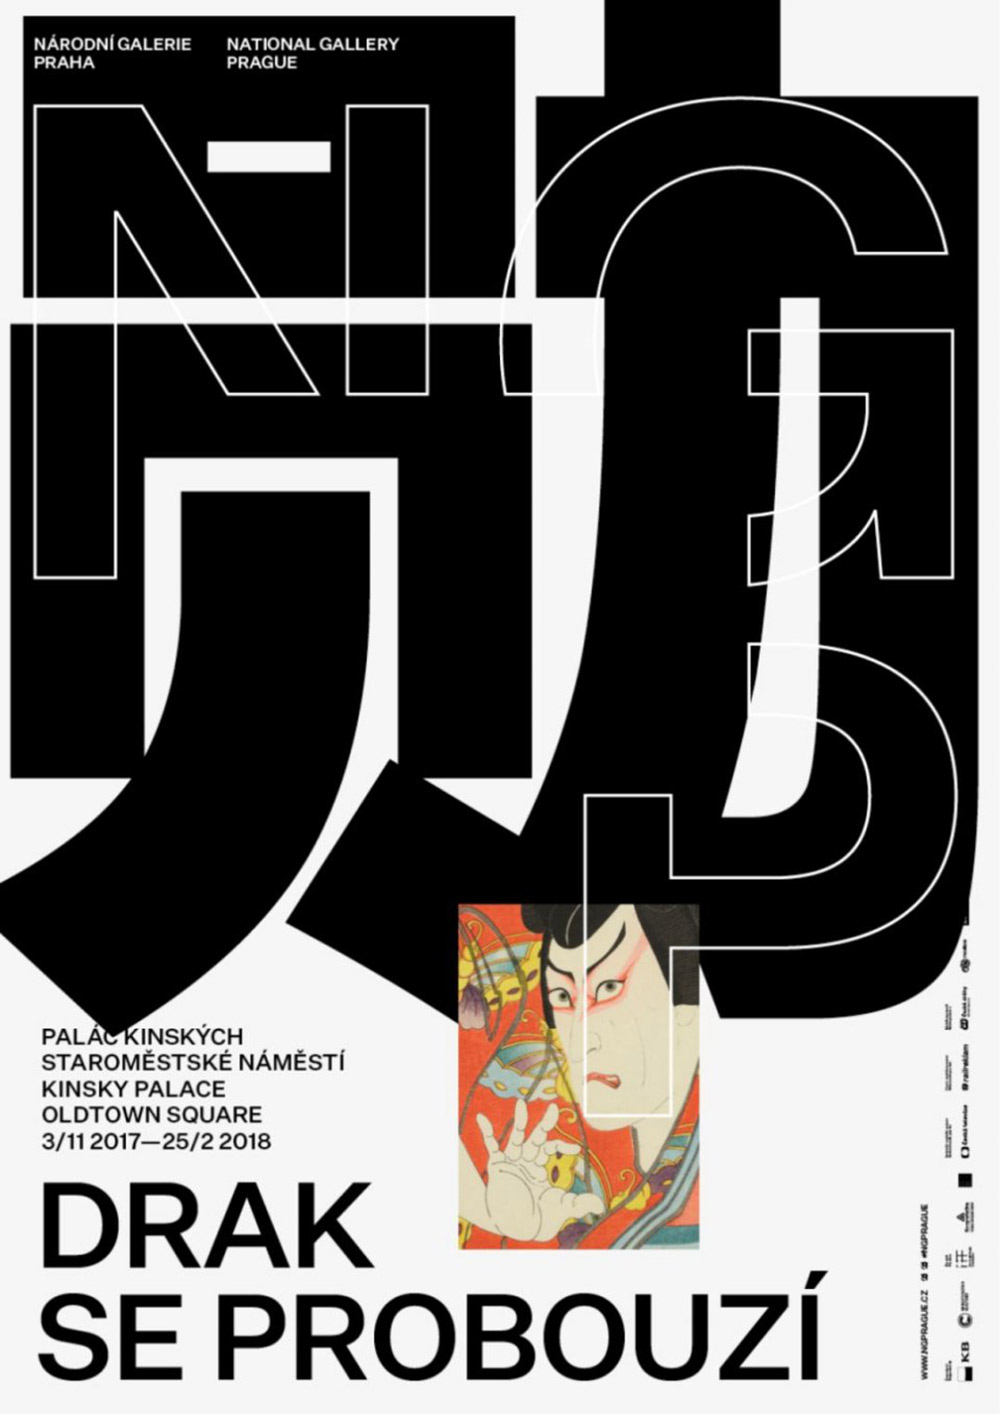 12张优质的日本展览海报